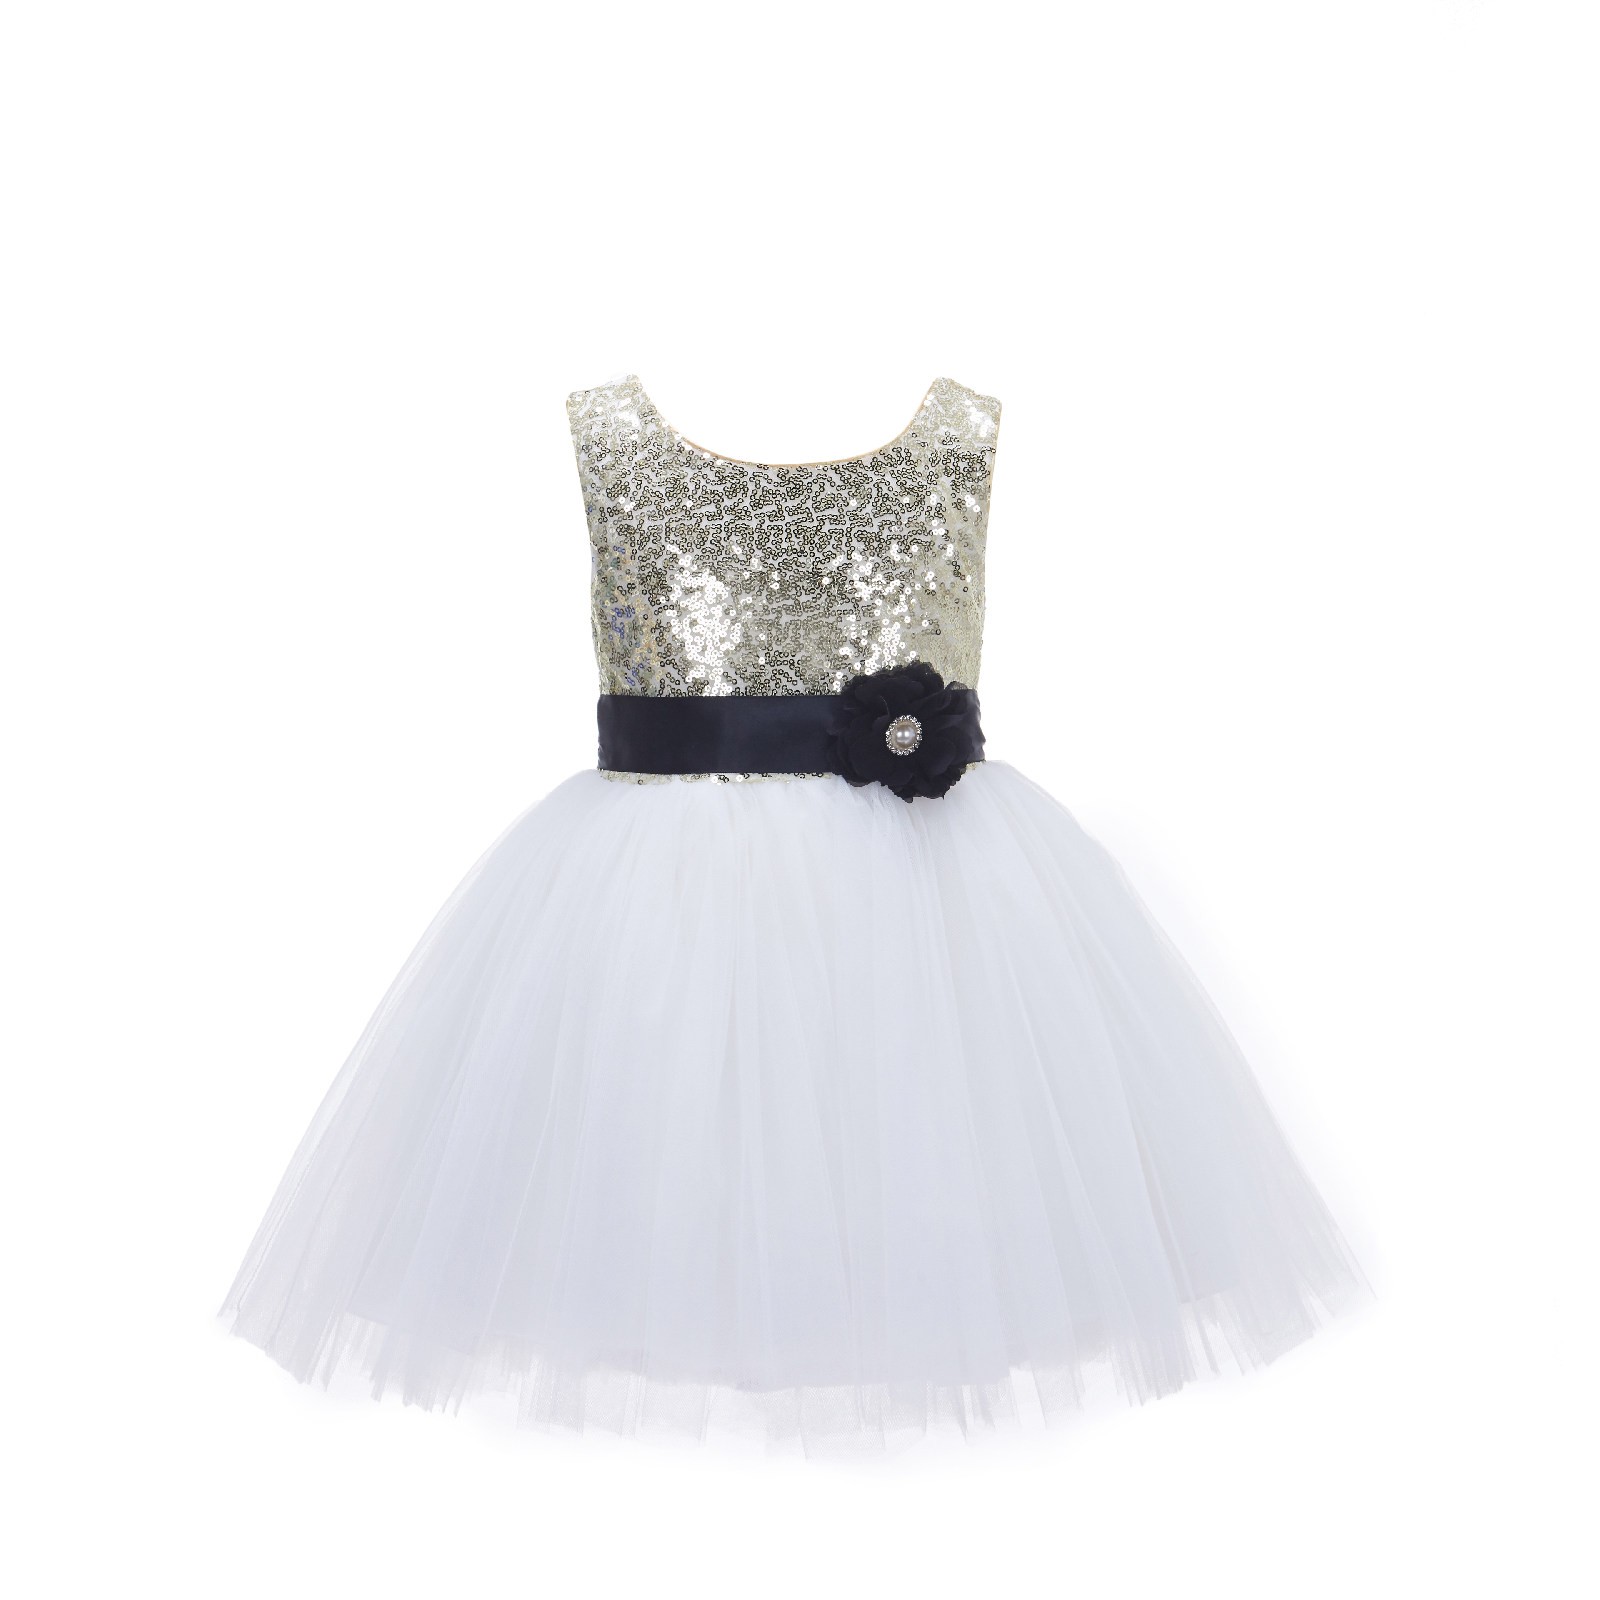 Gold/Ivory/Black Glitter Sequin Tulle Flower Girl Dress Party Ball Gown 123RF